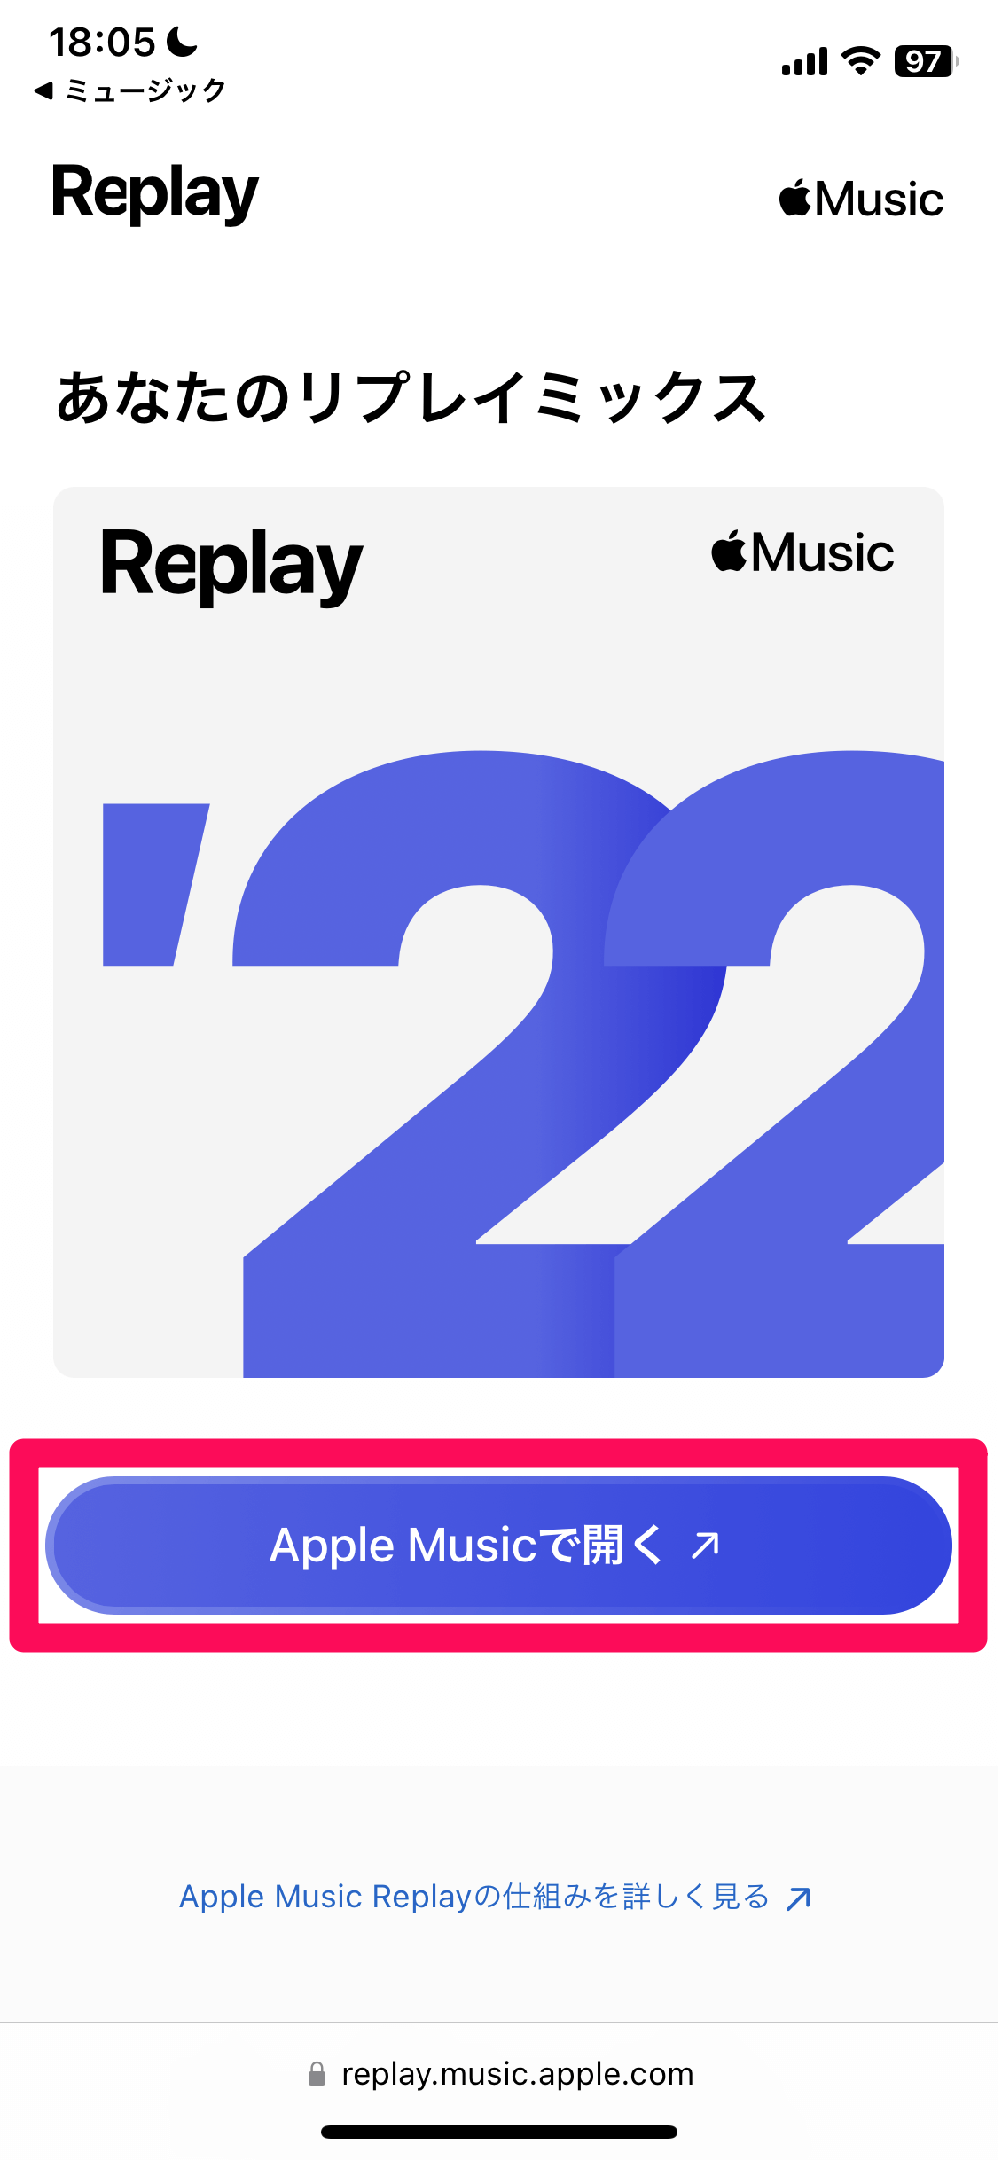 Apple Music Replayで自分だけの年間ランキングを作ろう！ 2022年版は新機能「ハイライトリール」も登場